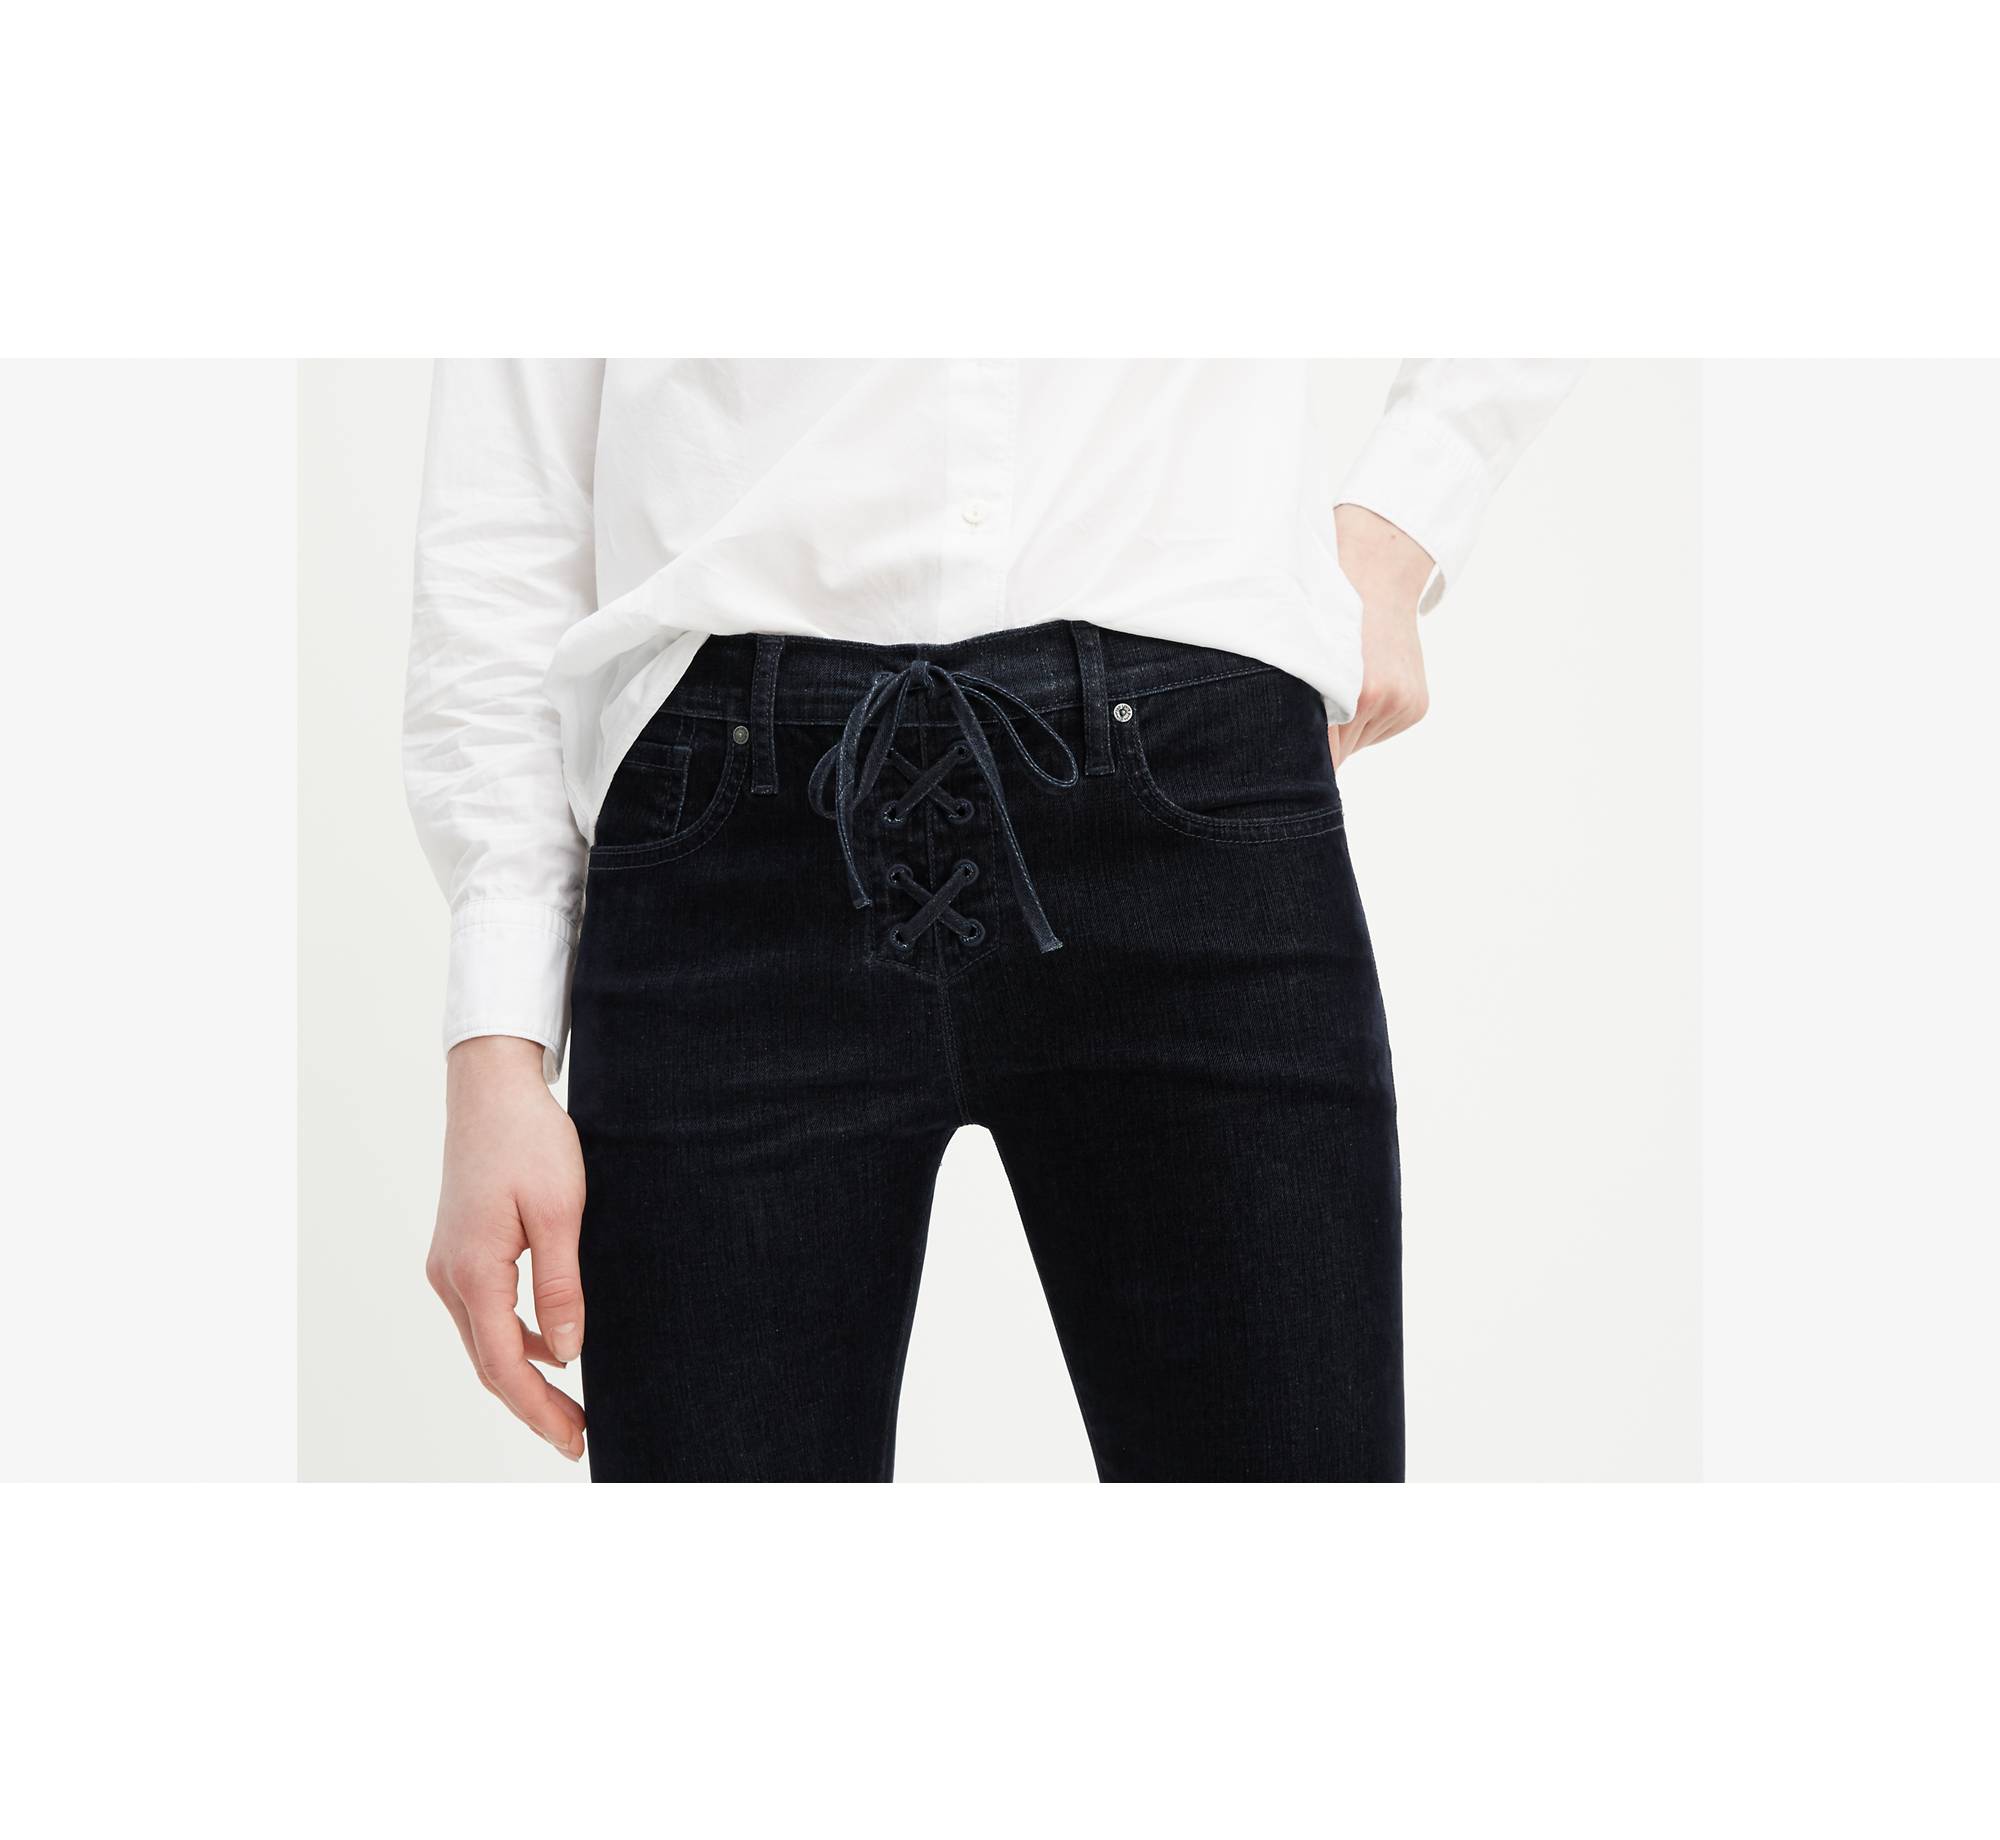 Lace Up Cigarette Women's Jeans - Black | Levi's® US